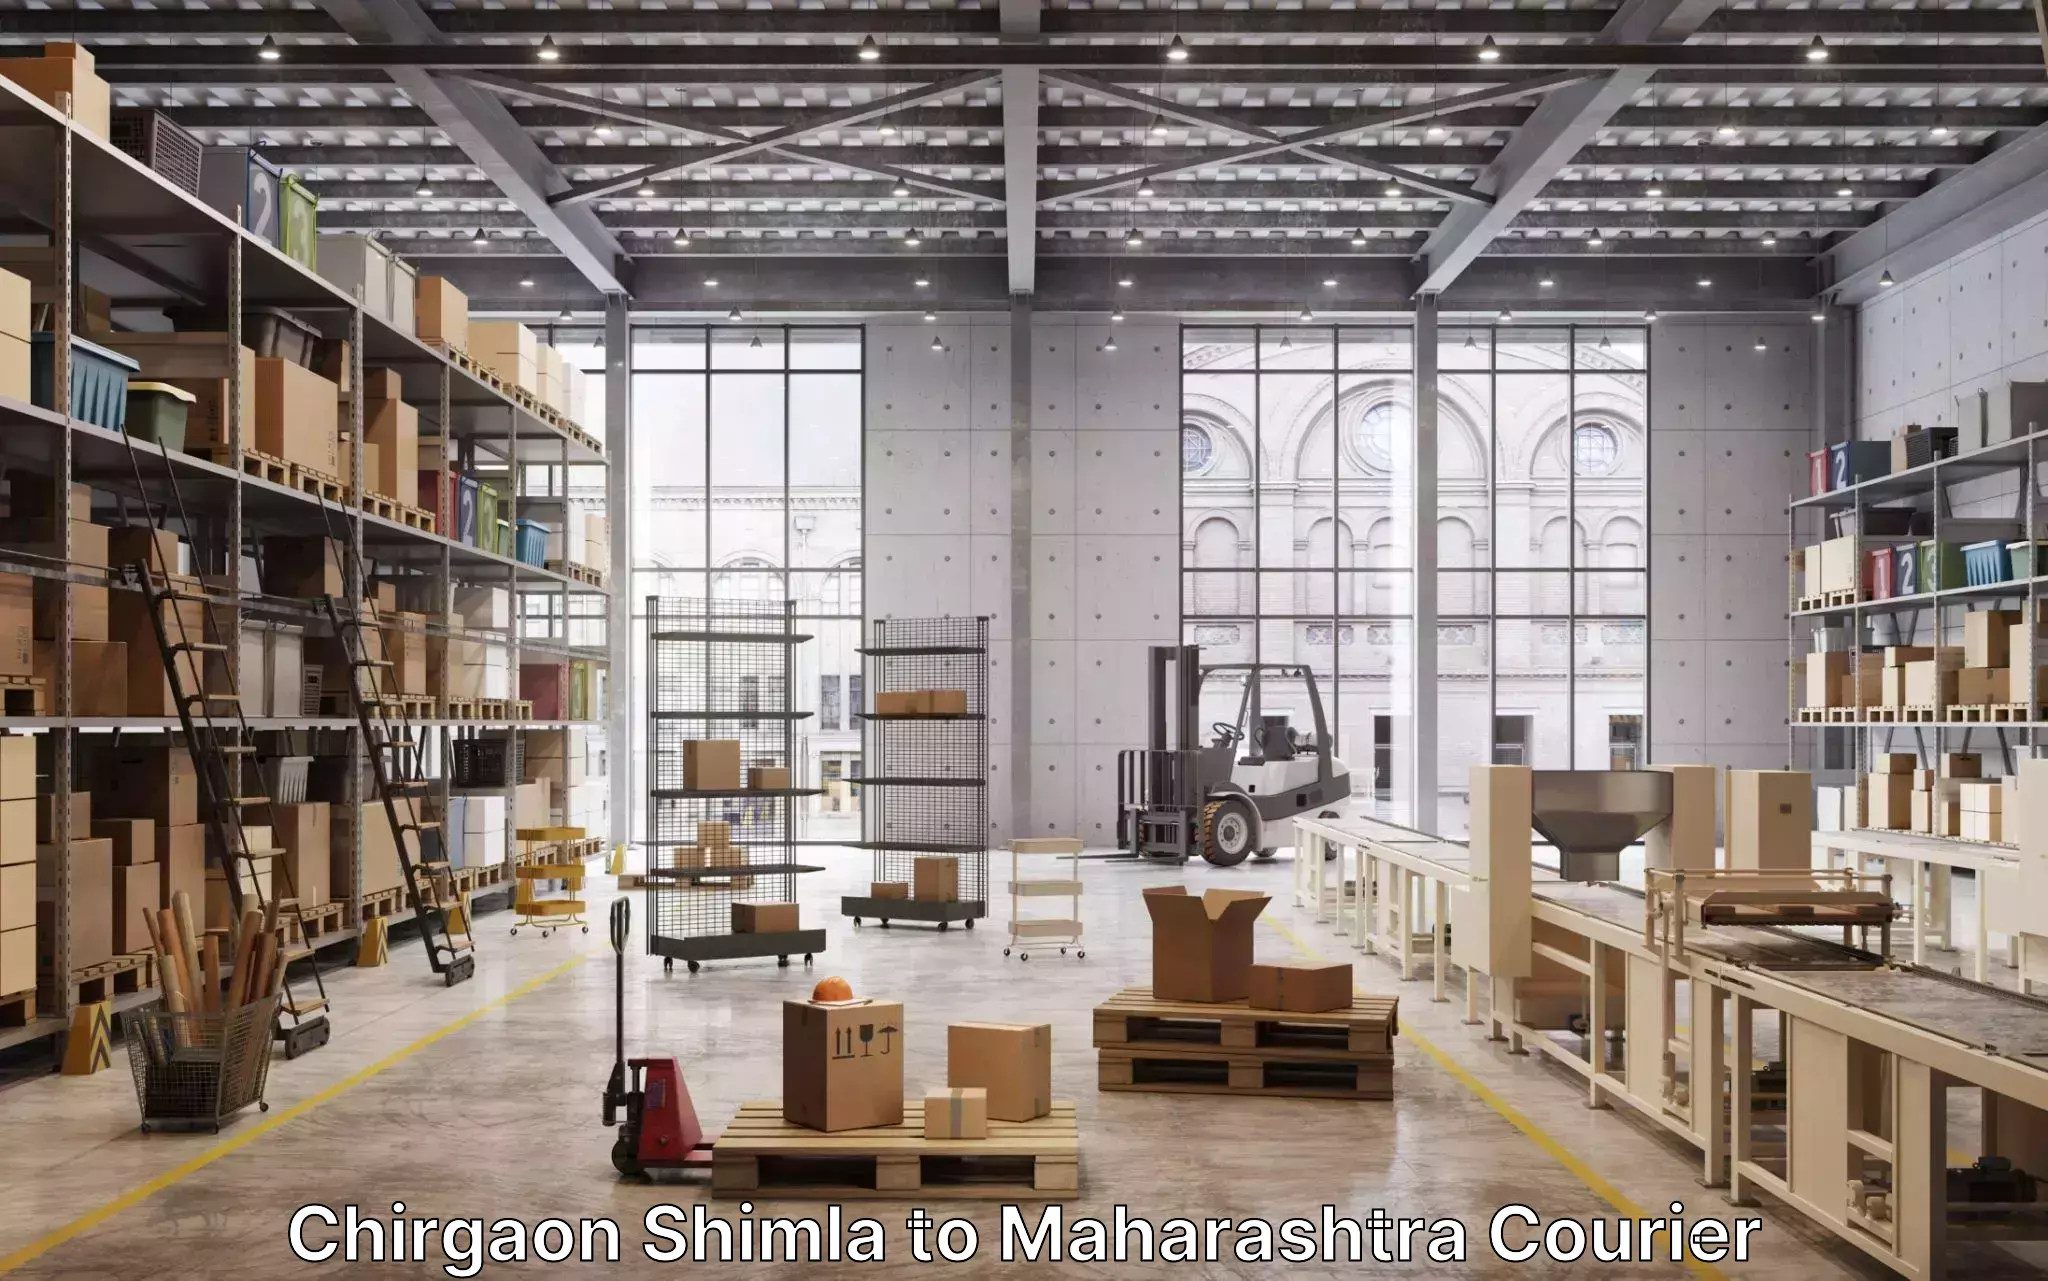 Trusted moving company Chirgaon Shimla to Maharashtra